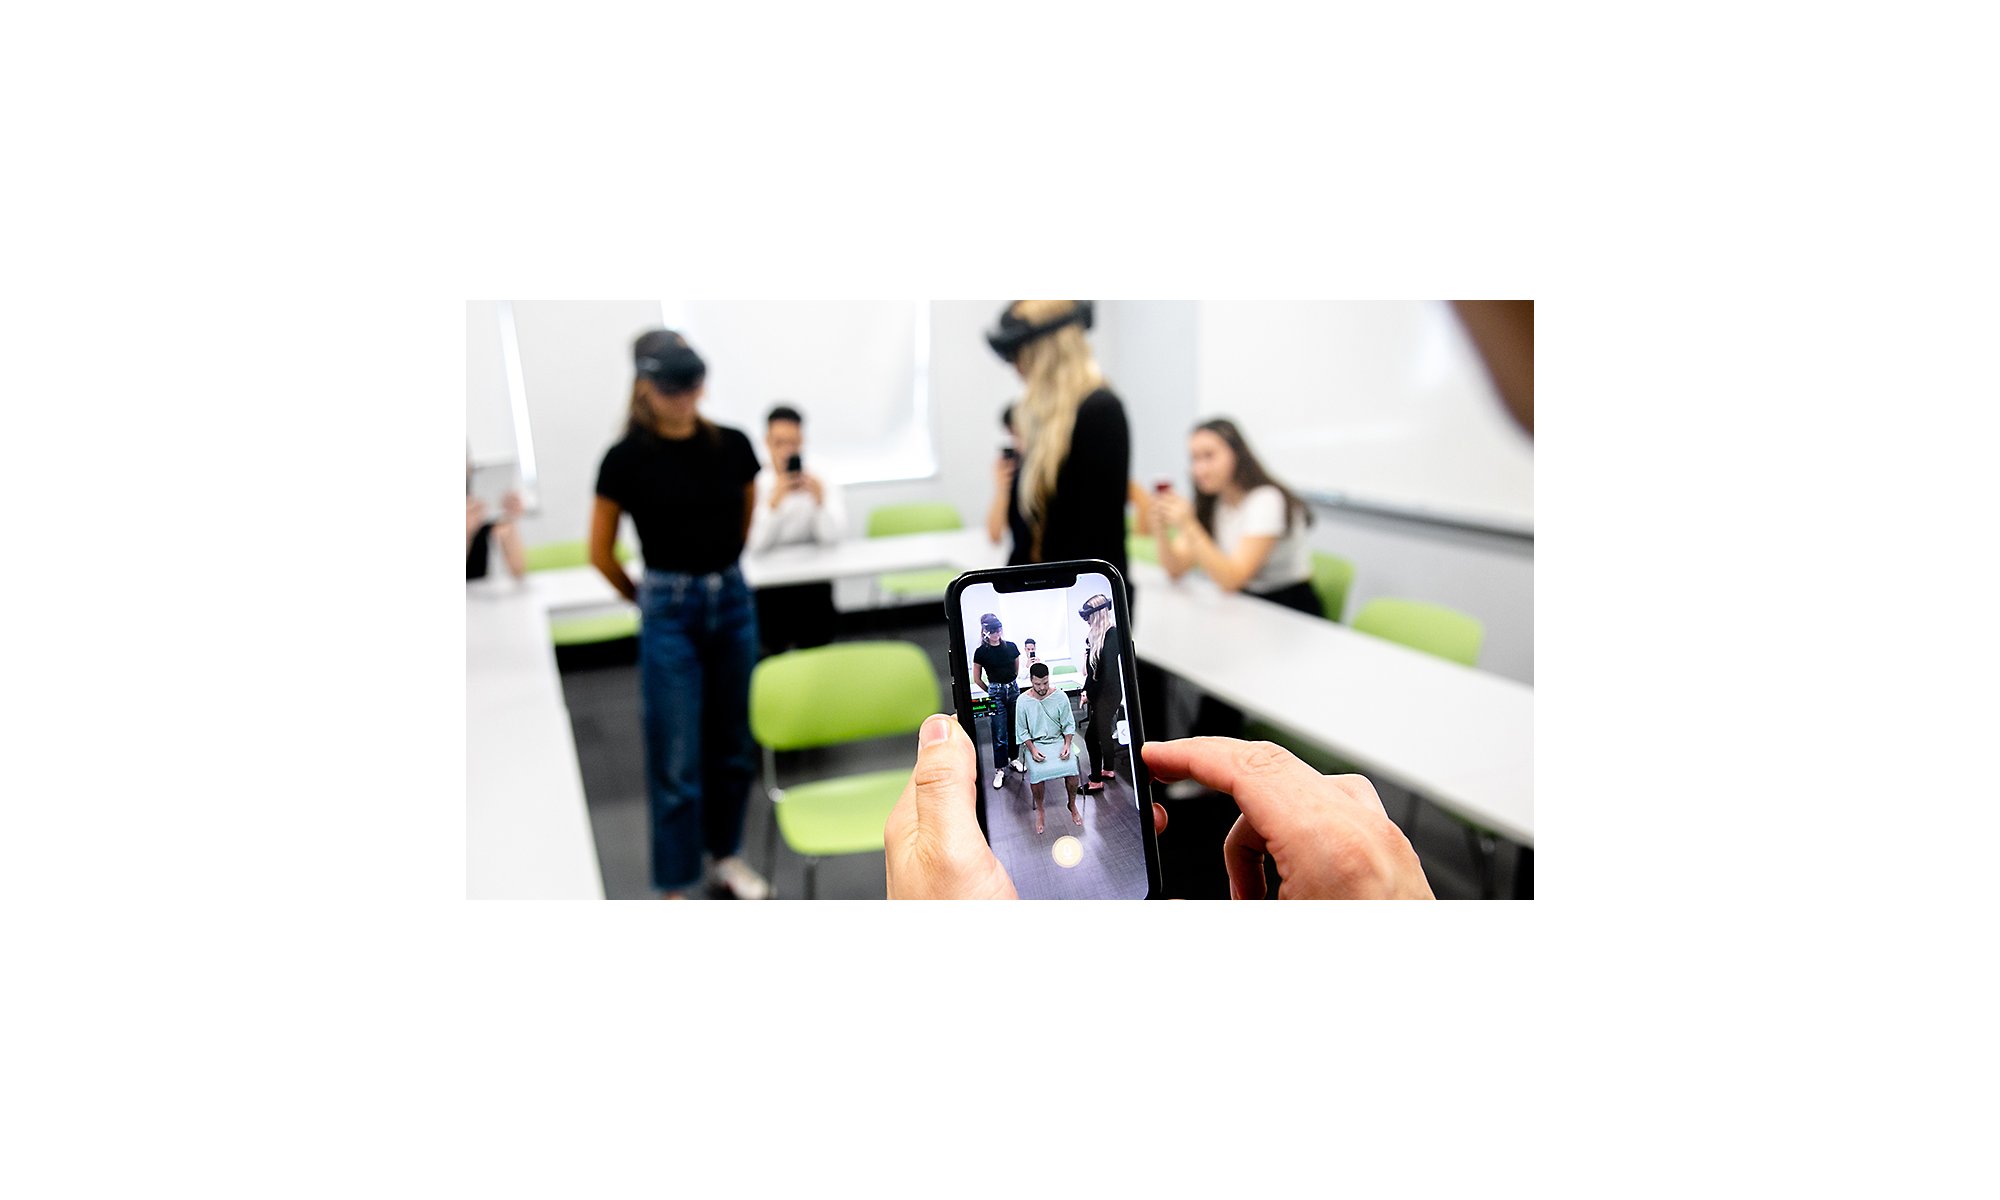 Учащиеся-медики используют HoloLens 2 для осмотра пациента.